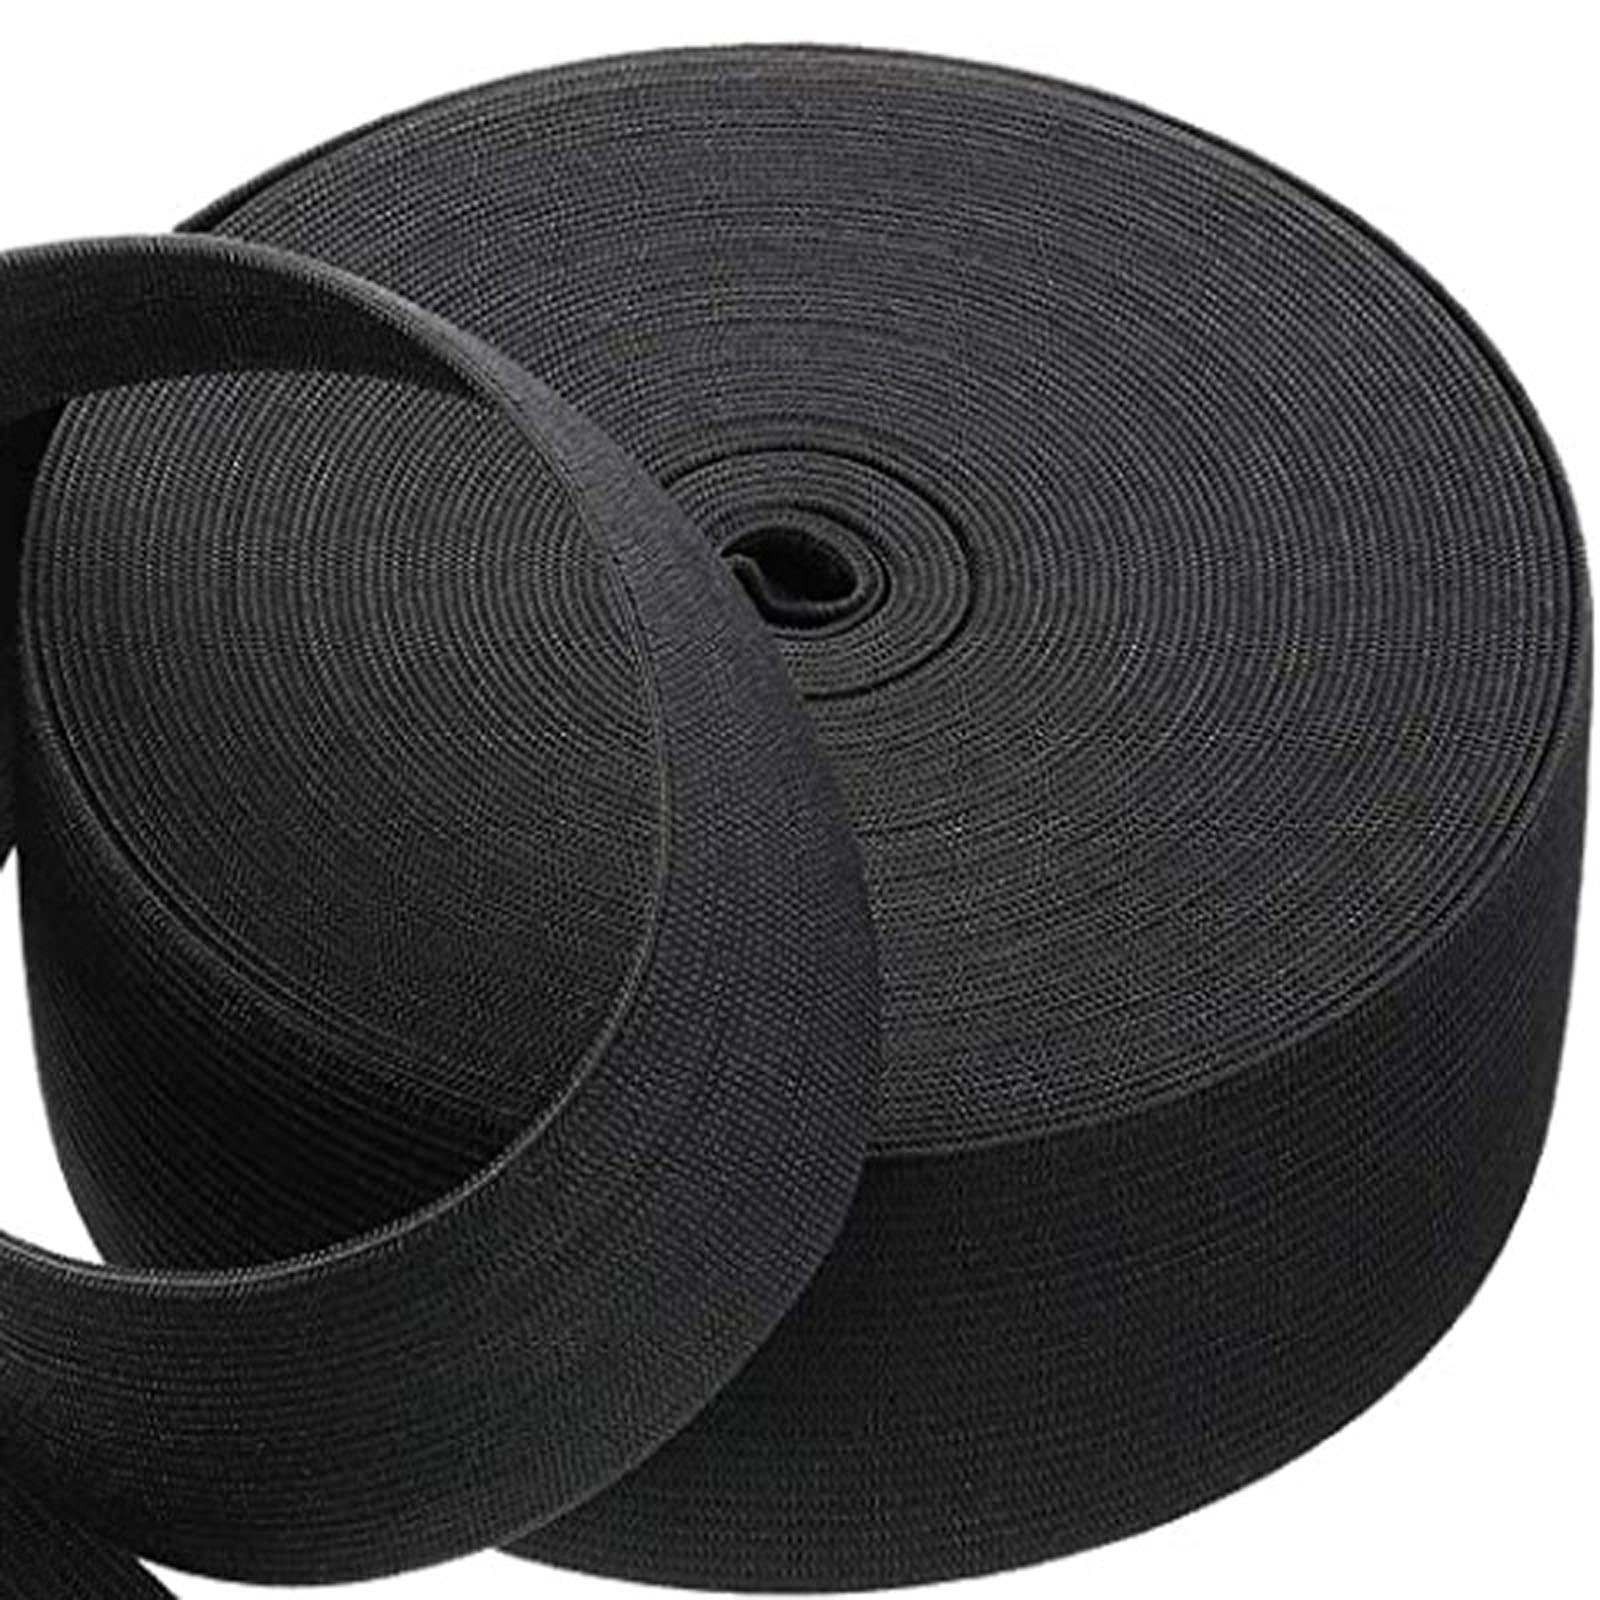 VIAILI 3 Inch by 6 Yard Heavy Stretch High Elasticity Elastic Spool Knit  Elastic Bands for Sewing (Black 3inch) black 3inch